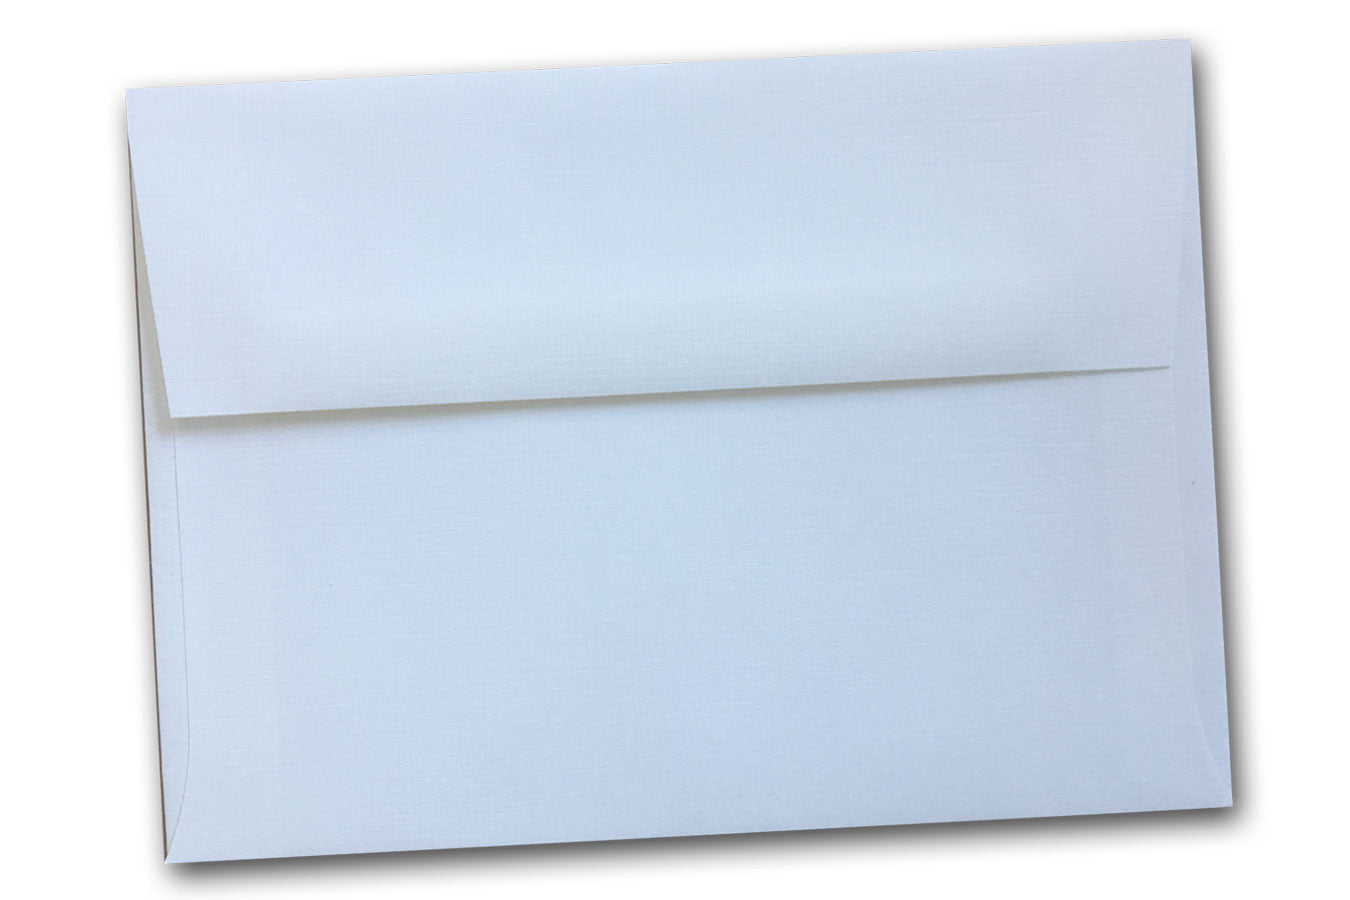 Premium Linen A7 Envelopes for 5x7 announcements and DIY